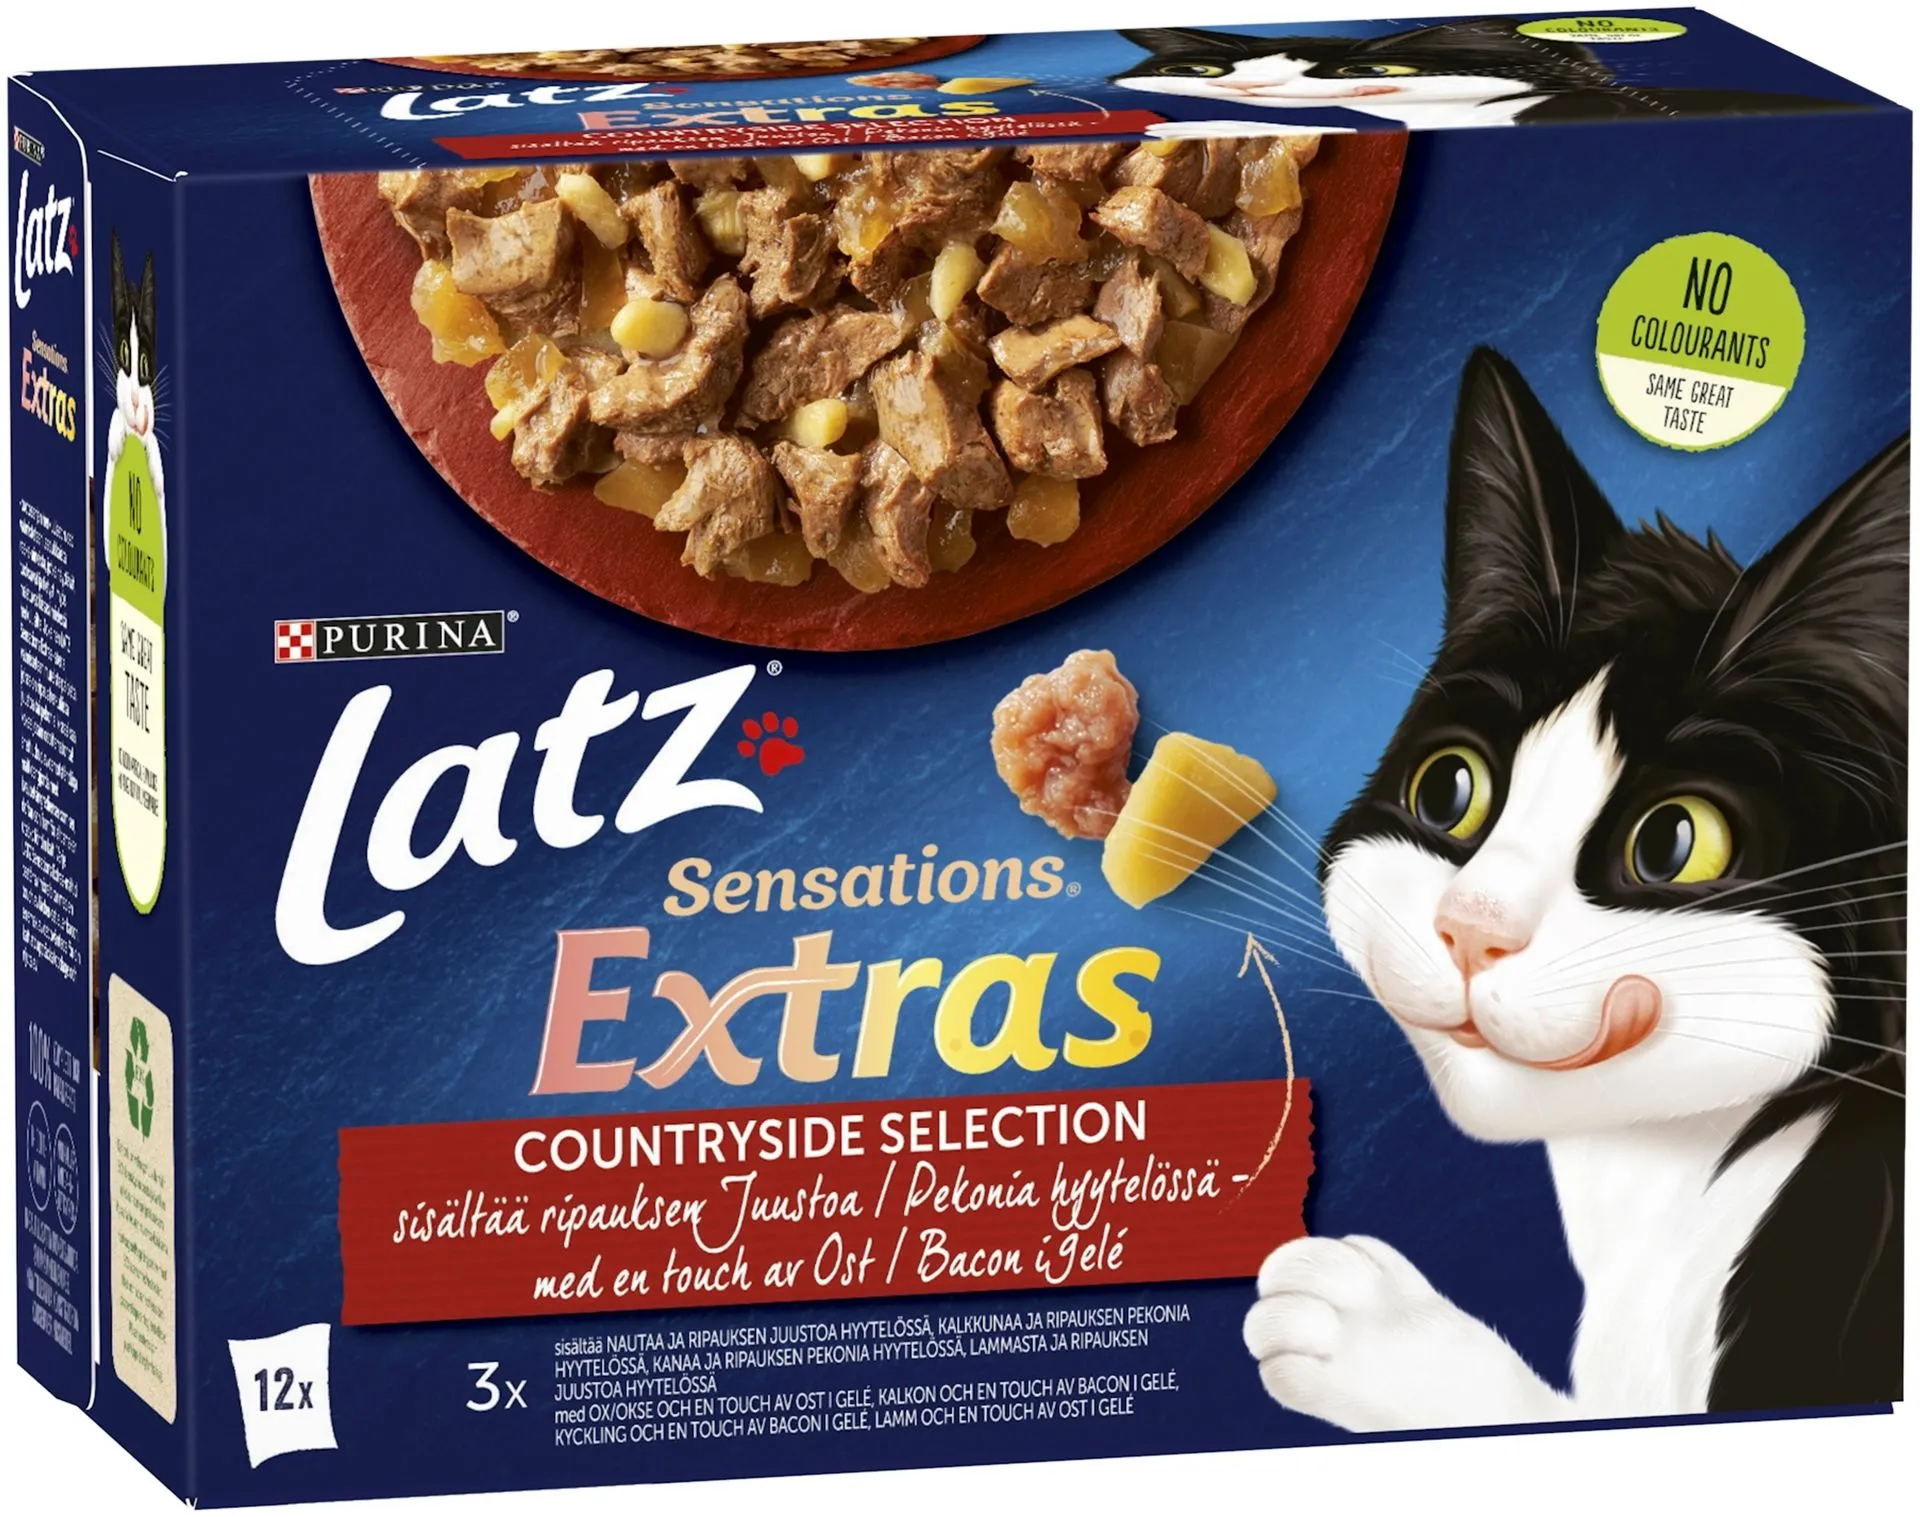 Latz Sensations Extras 12x85g Countryside lajitelma hyytelössä 4 varianttia kissanruoka